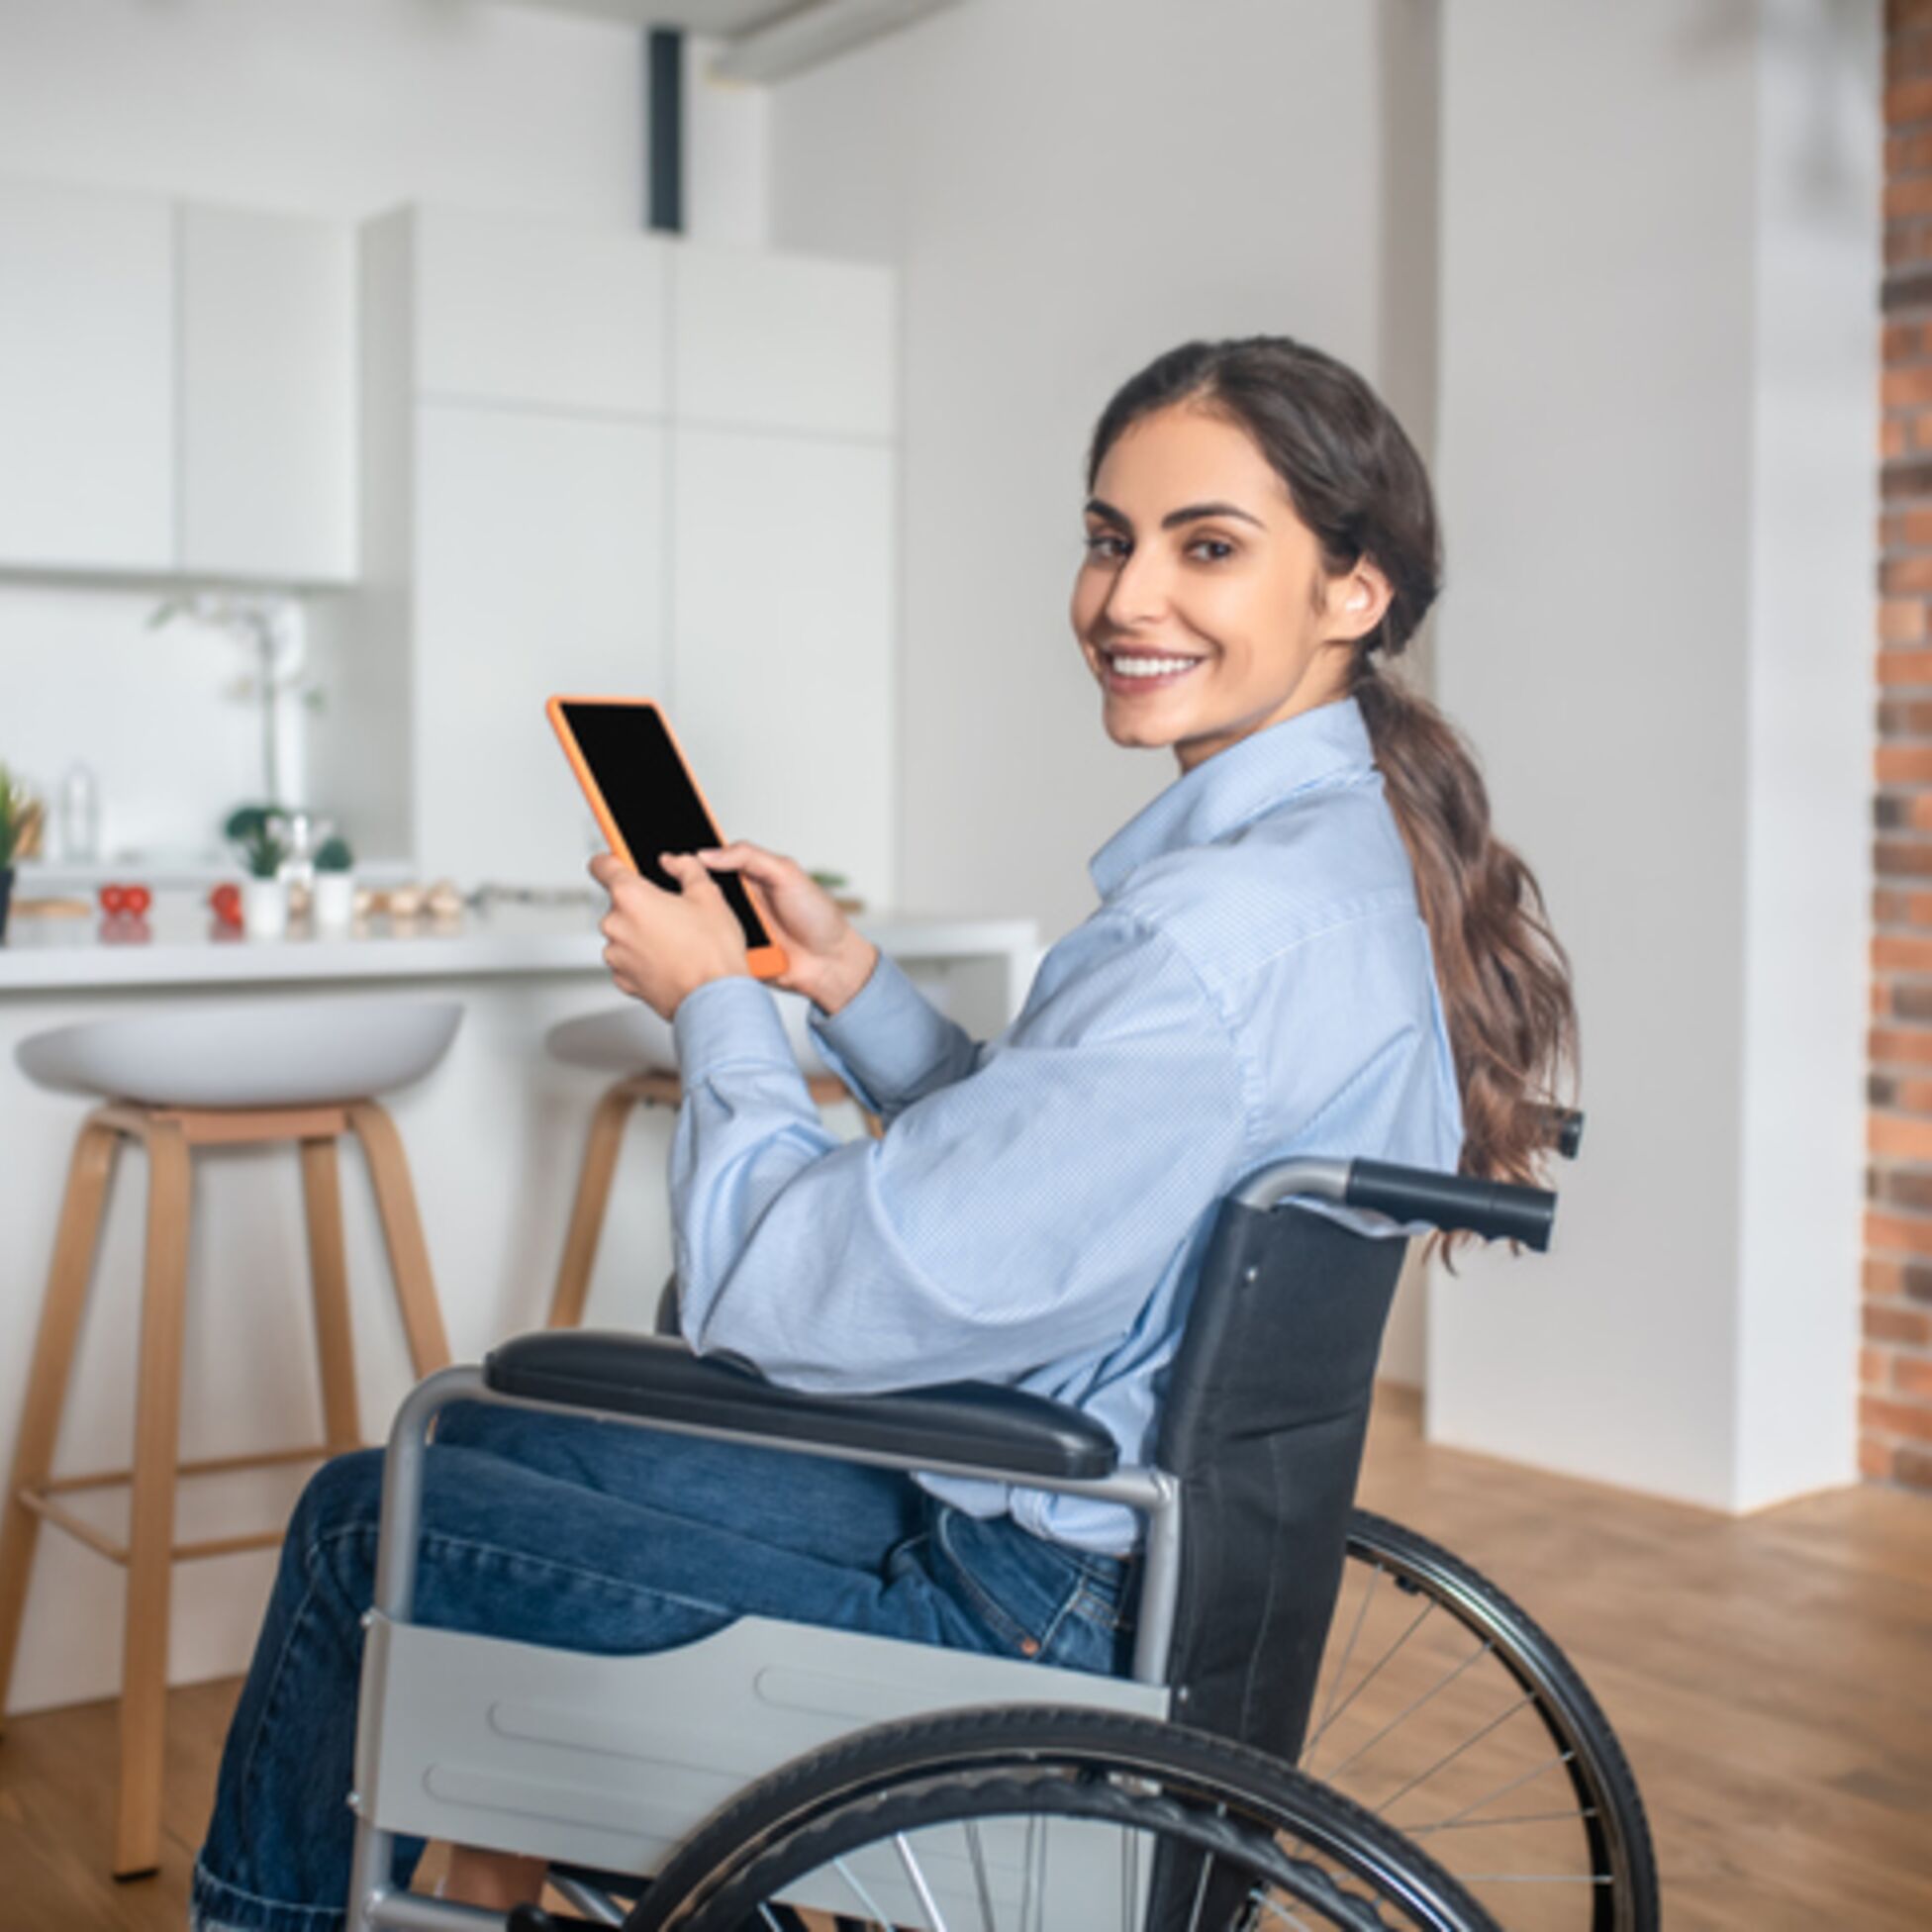 Junge Frau sitzt im Rollstuhl und hält ein Tablet in der Hand, im Hintergrund ist eine Küche